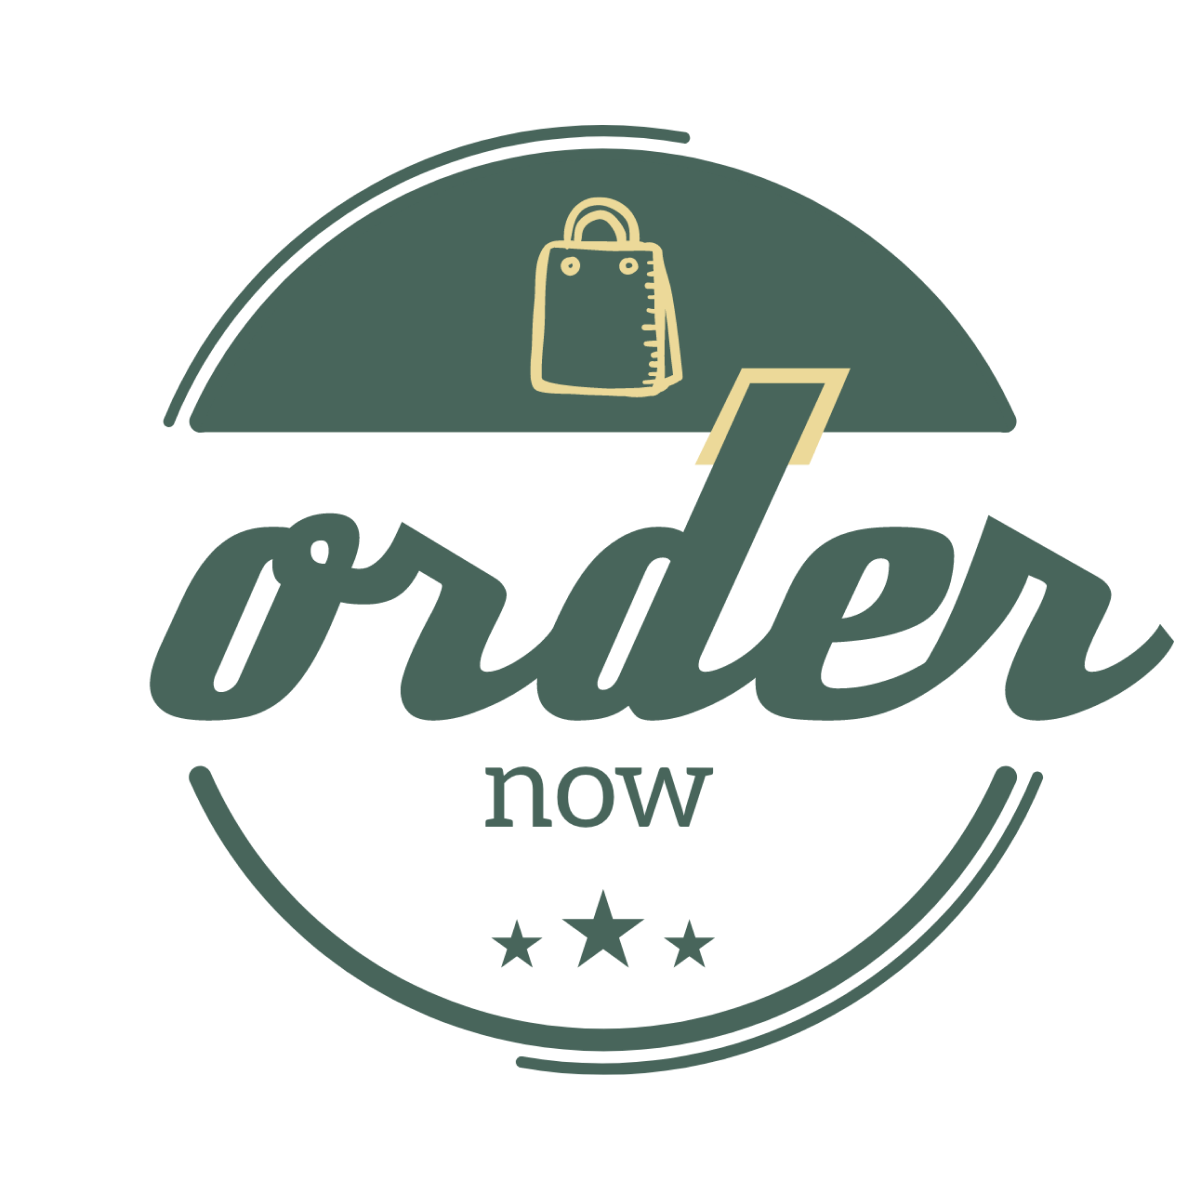 "order now" icon